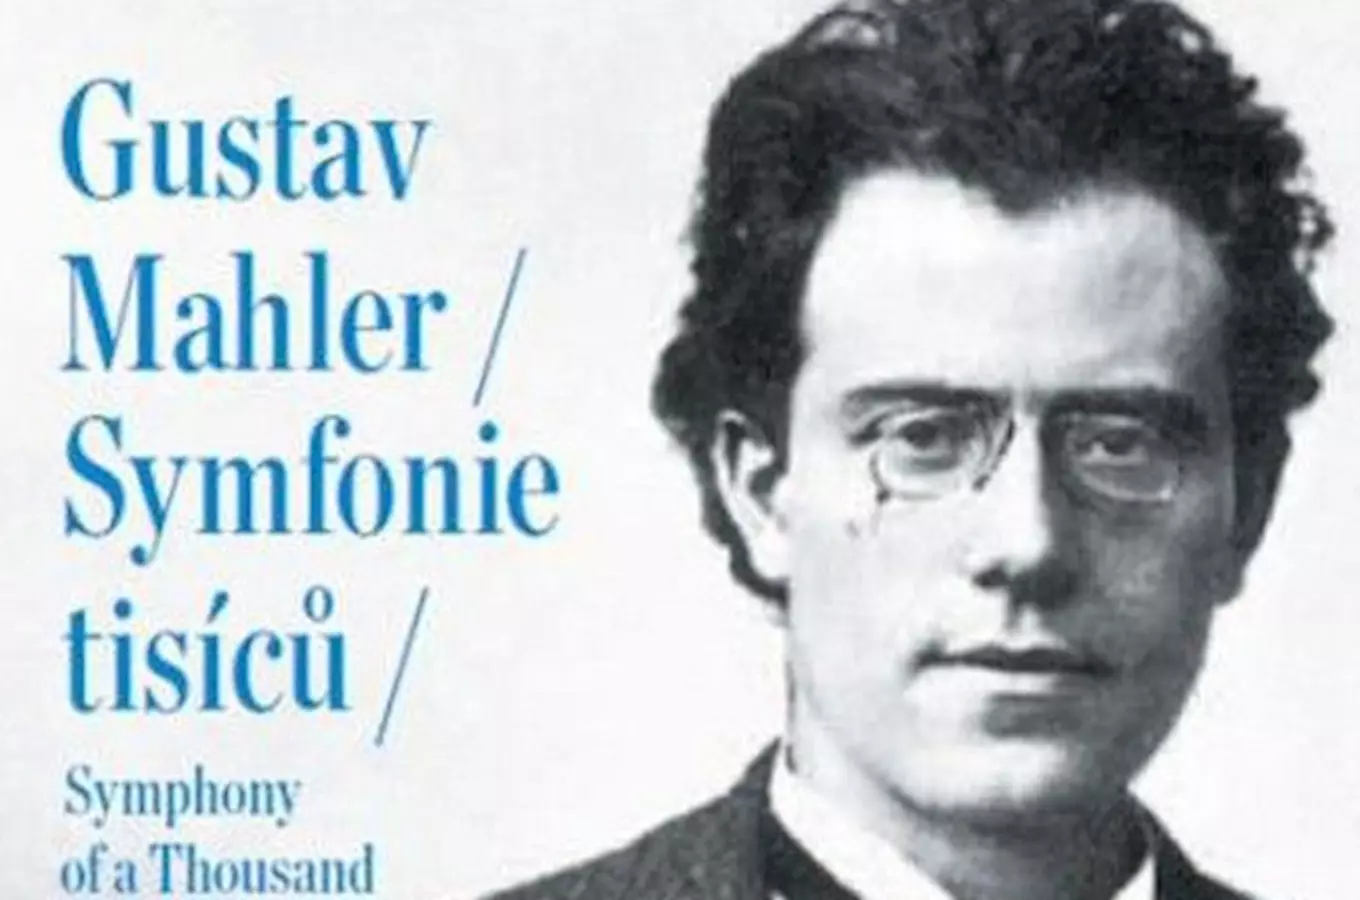 Prazske-jaro-2011--Gustav-Mahler-Symfonie-tisicu